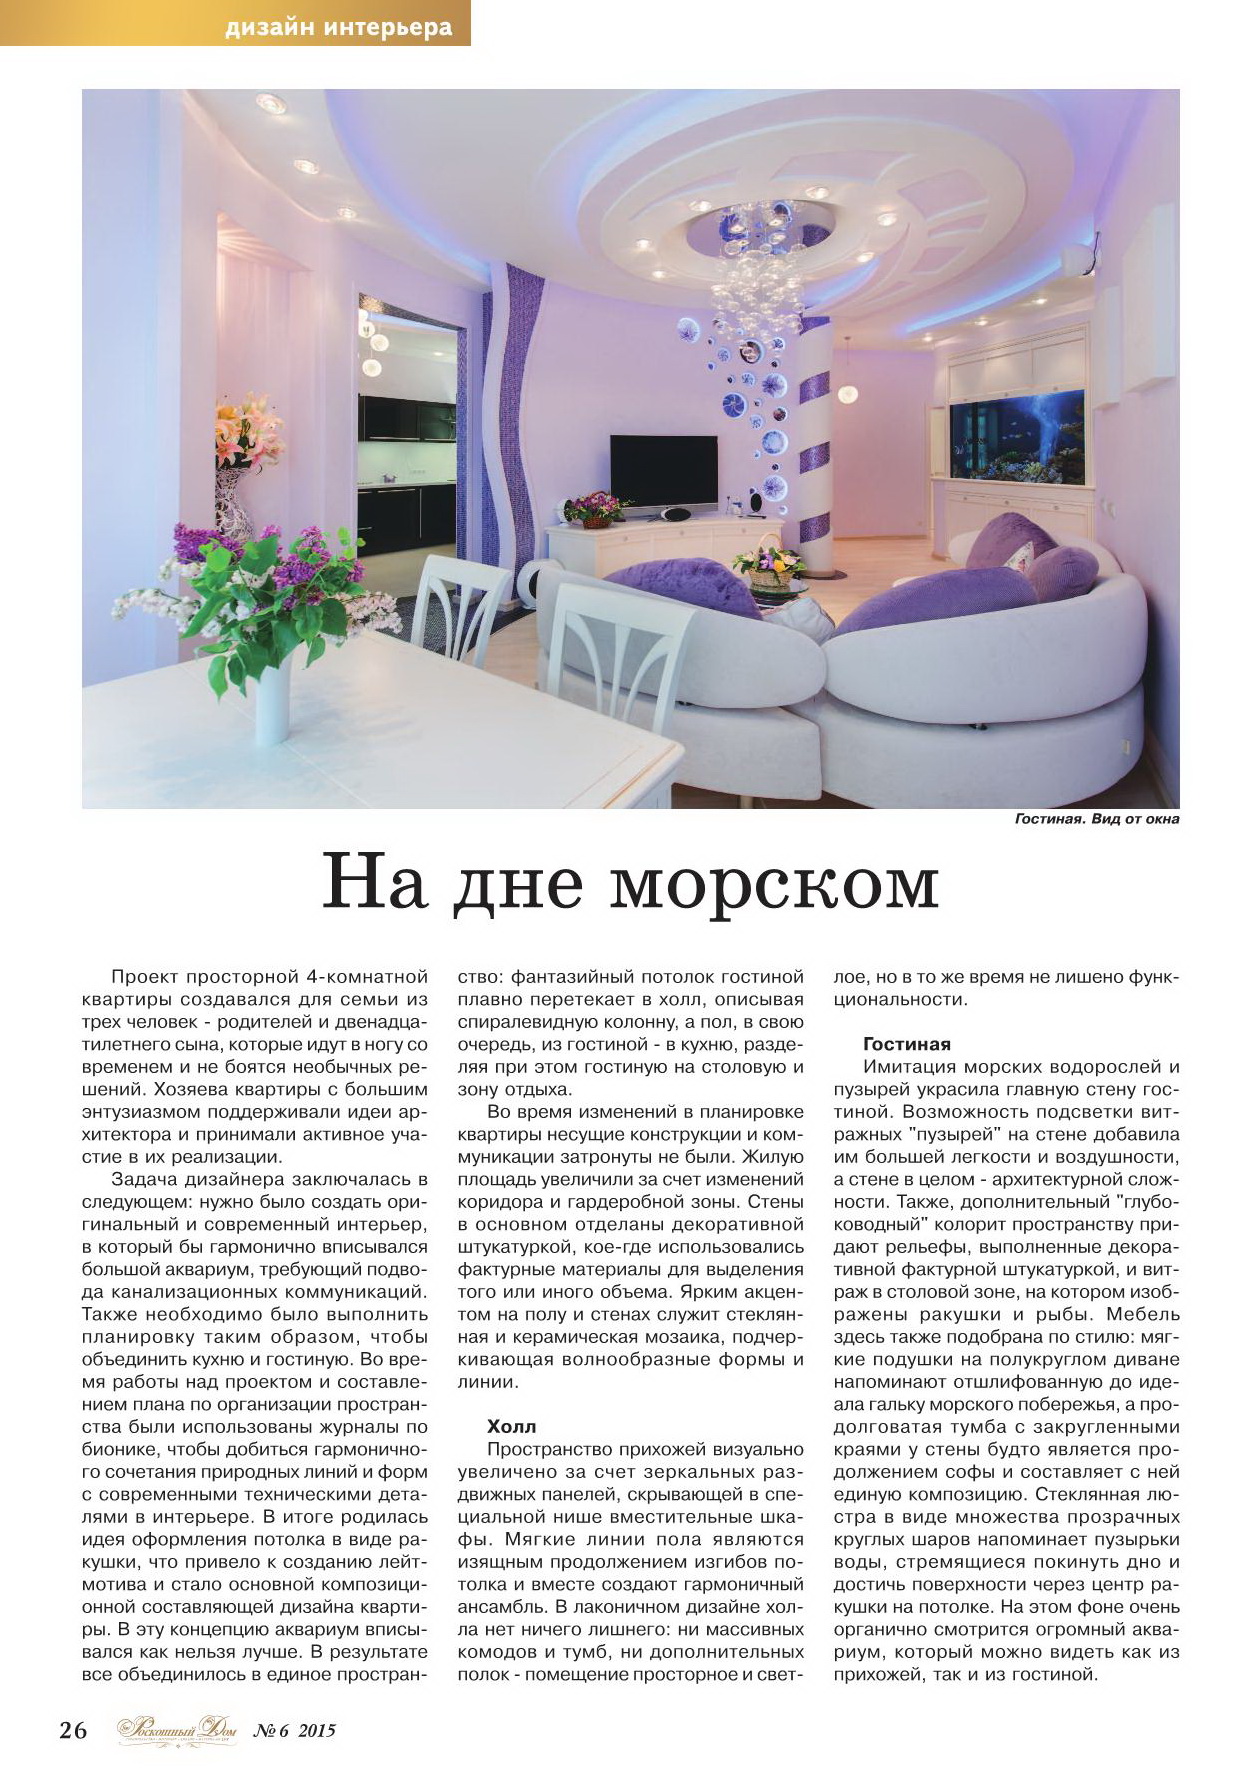 Журнал «Роскошный дом», (№6 2015)